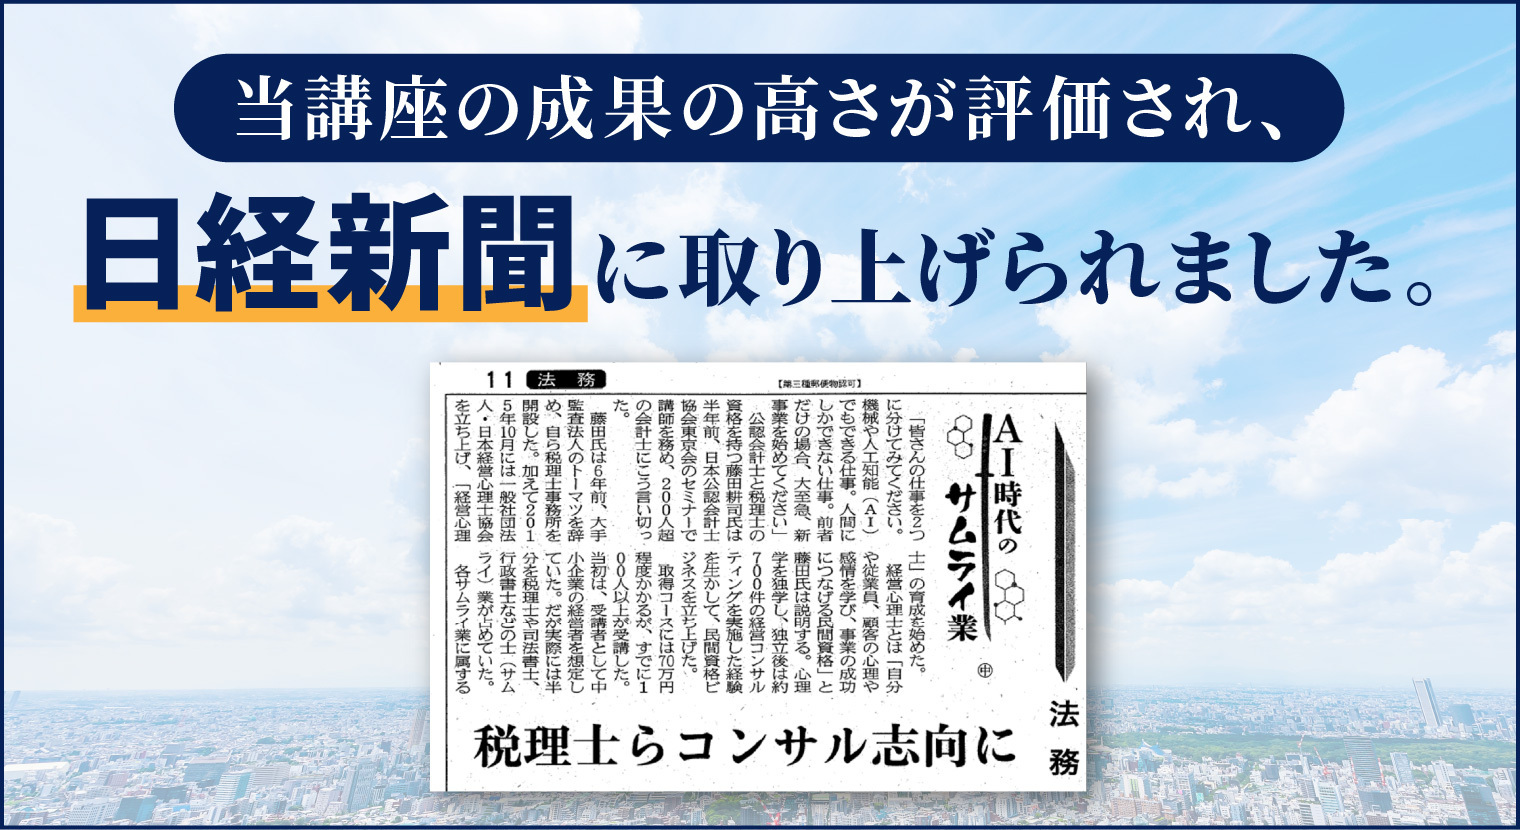 当講座の成果の高さが評価され、日経新聞に取り上げられました。